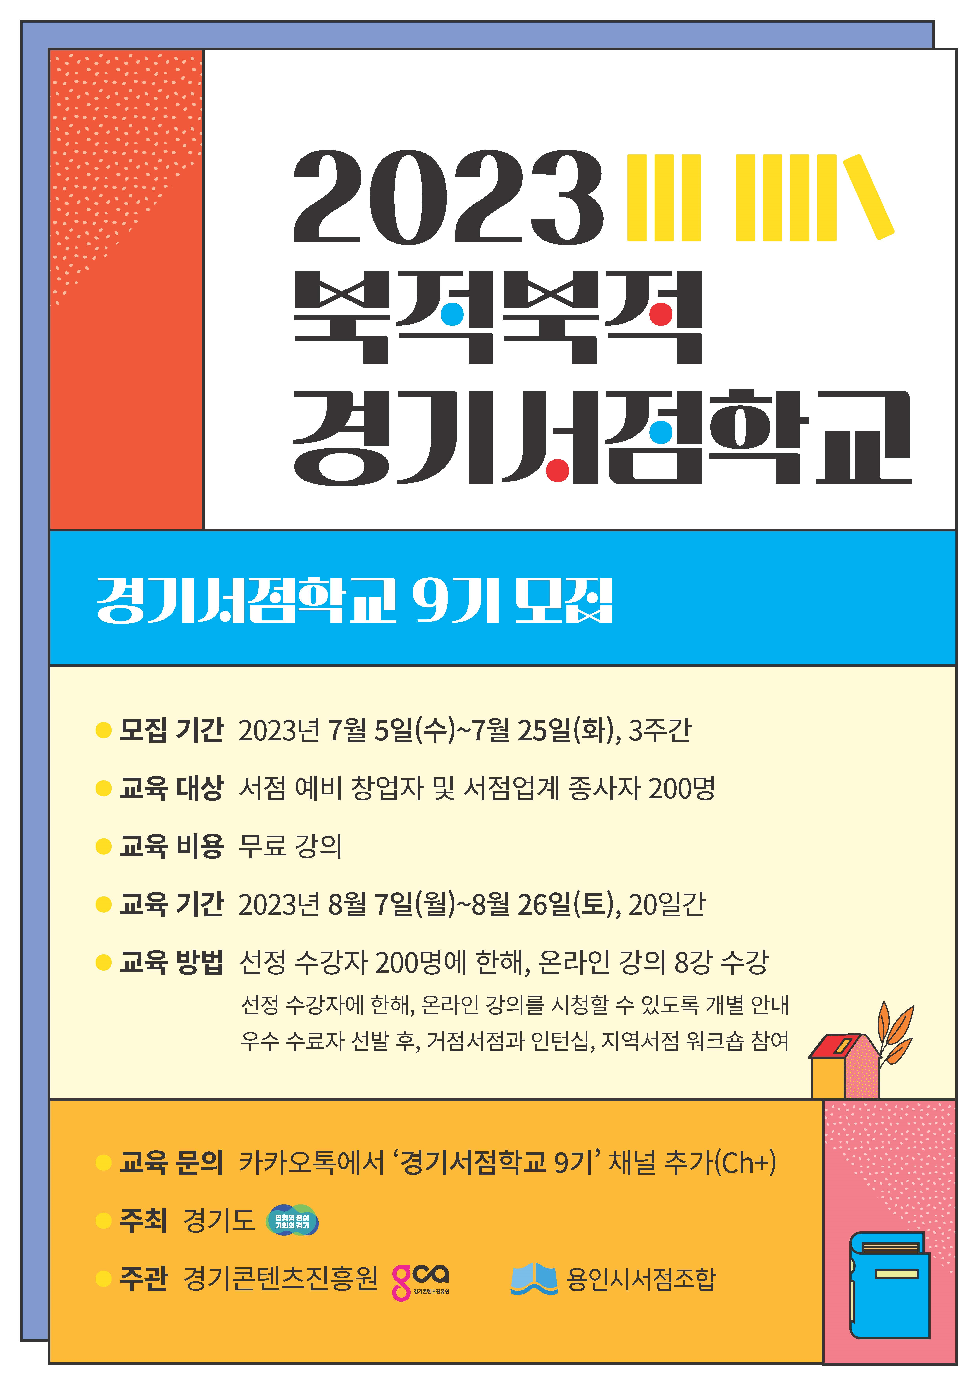 경기도, ‘2023 북적북적 경기서점학교’ 수강생 모집